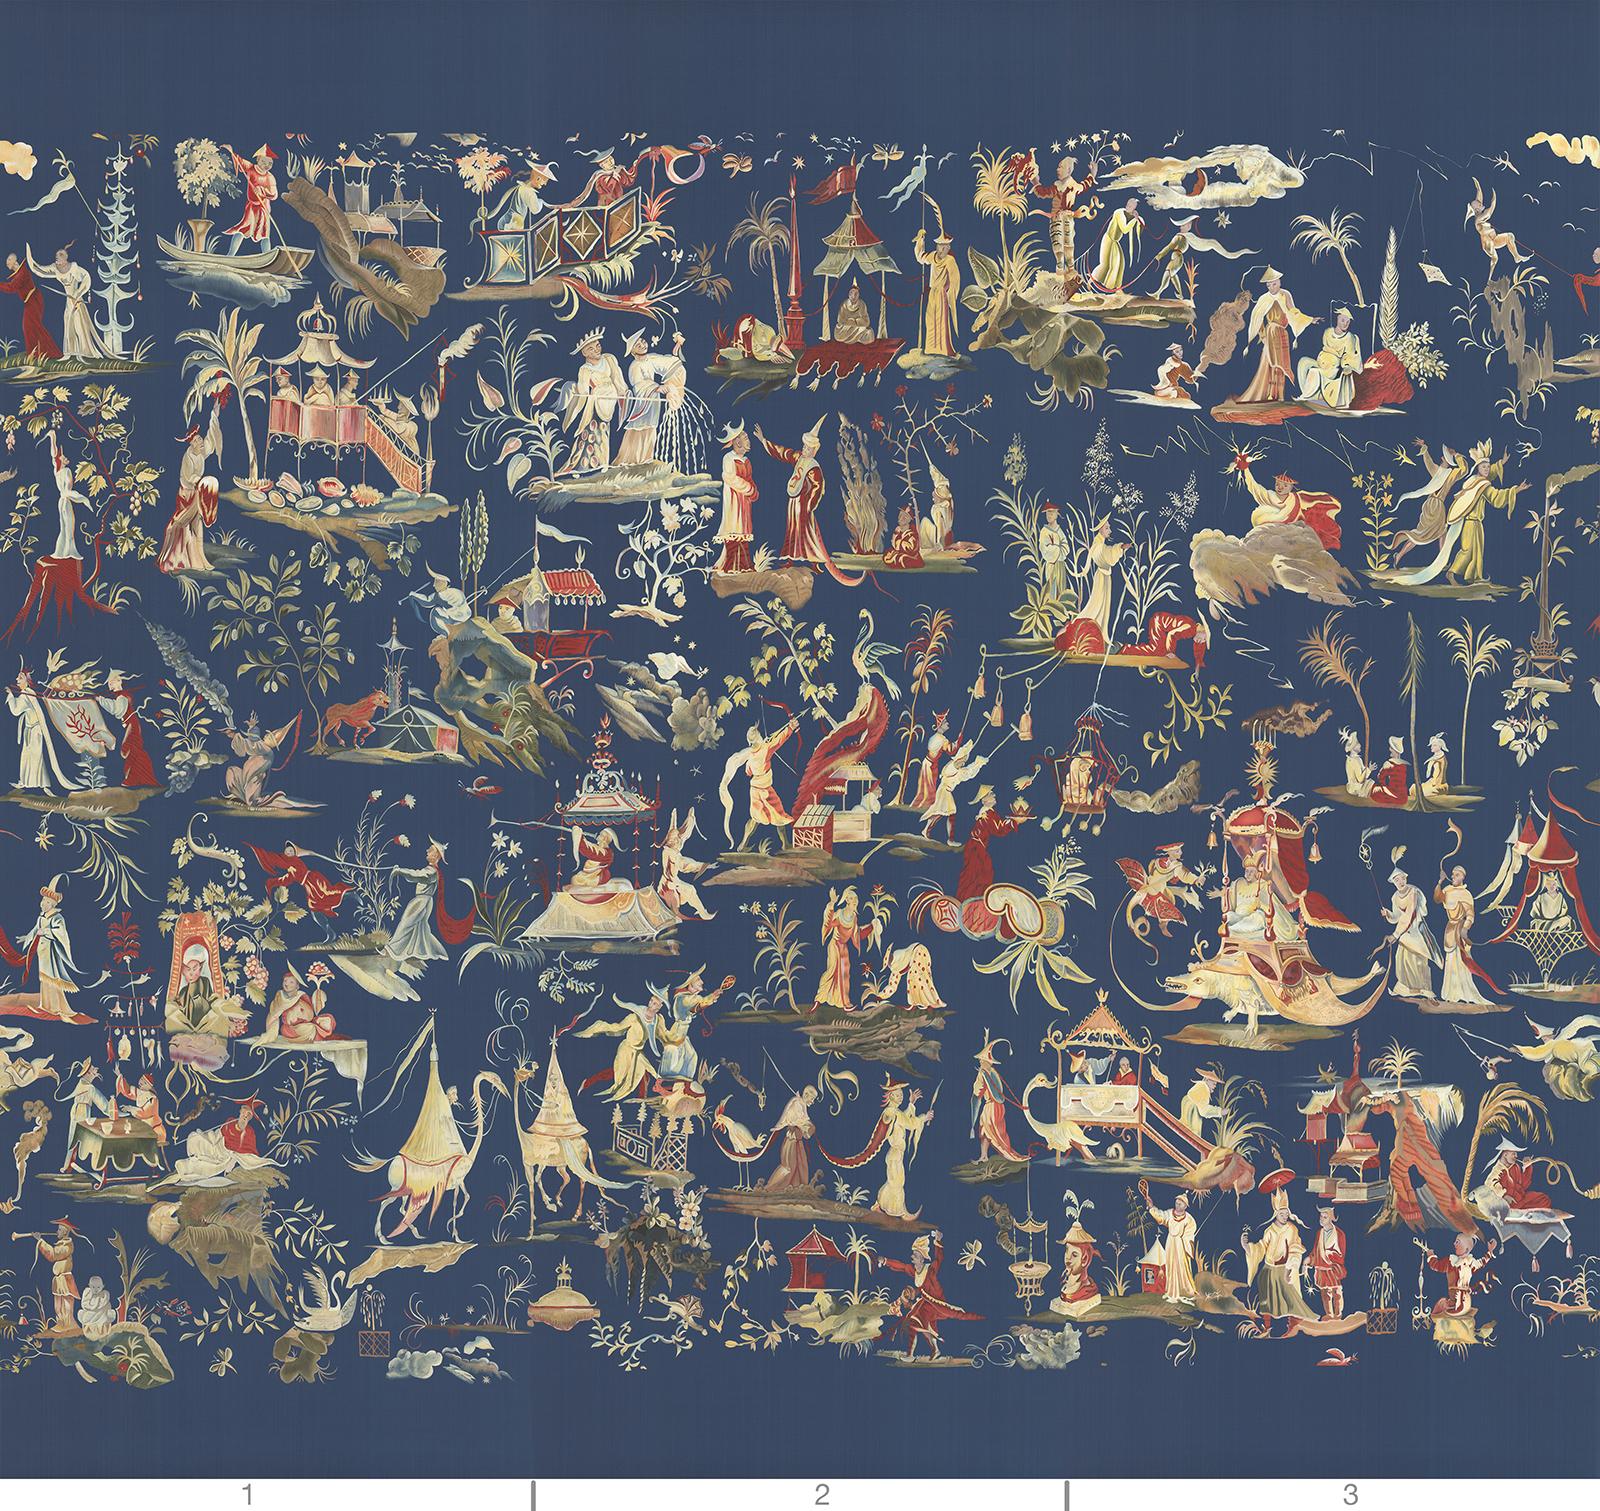 La tapisserie de Bruxelles est une fresque composée de trois panneaux distincts peints à la main sur un fond bleu de soie.  Chaque panneau consiste en un collage de vignettes avec des personnages, des animaux, des bateaux et des tours.  Ce délice de